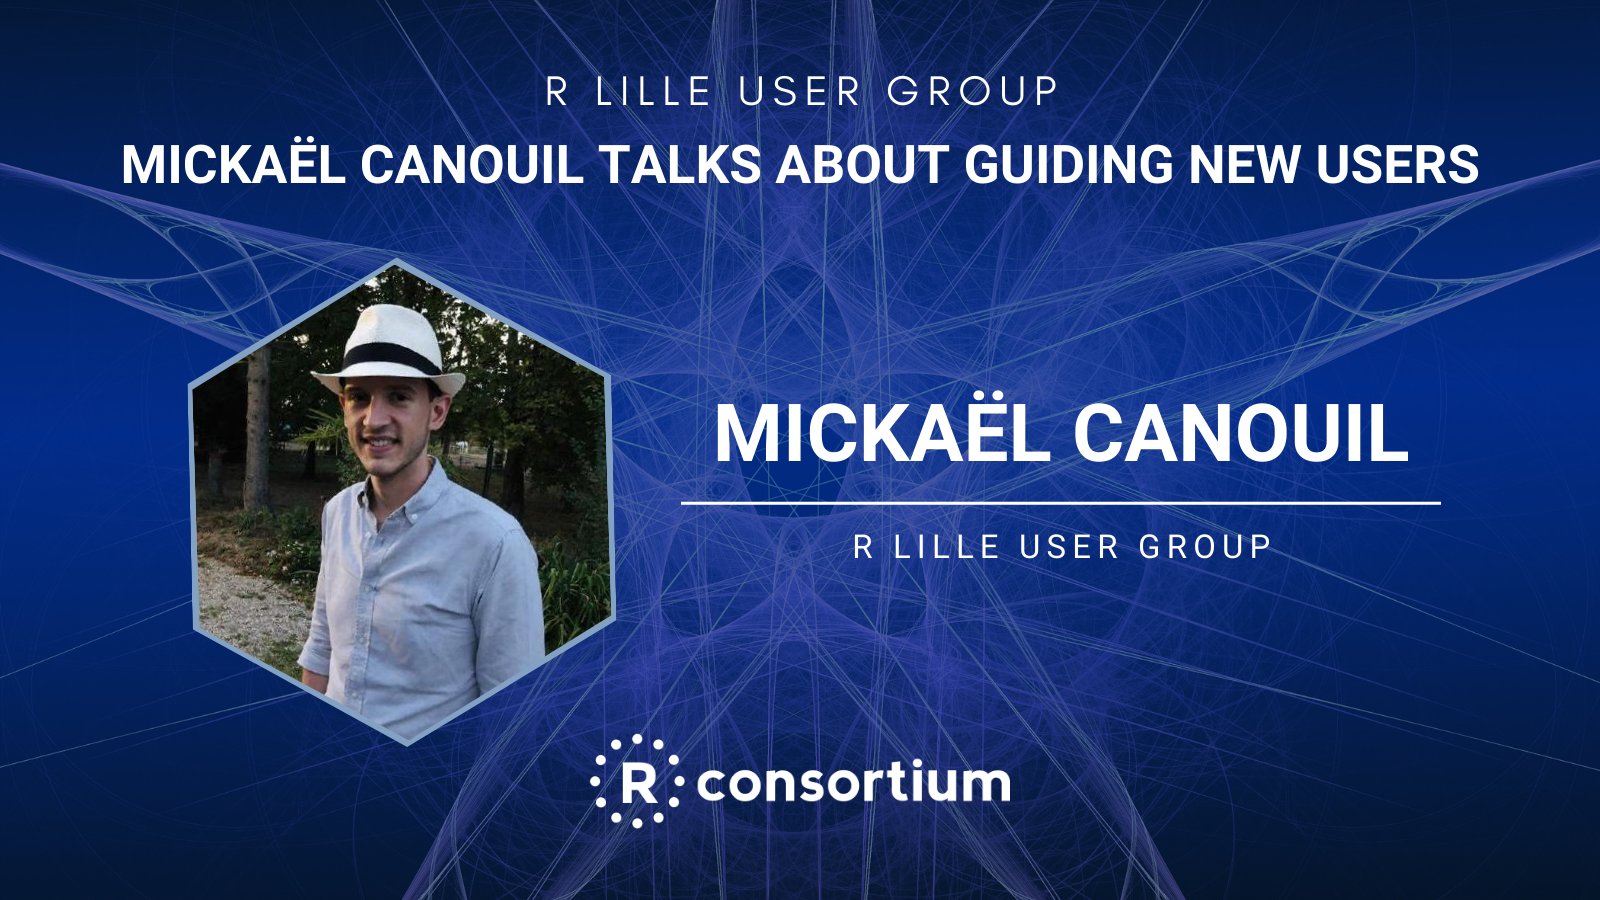 Affiche de l'interview de Mickaël Canouil par le R Consortium sur le groupe des utilisateurs de R: R Lille